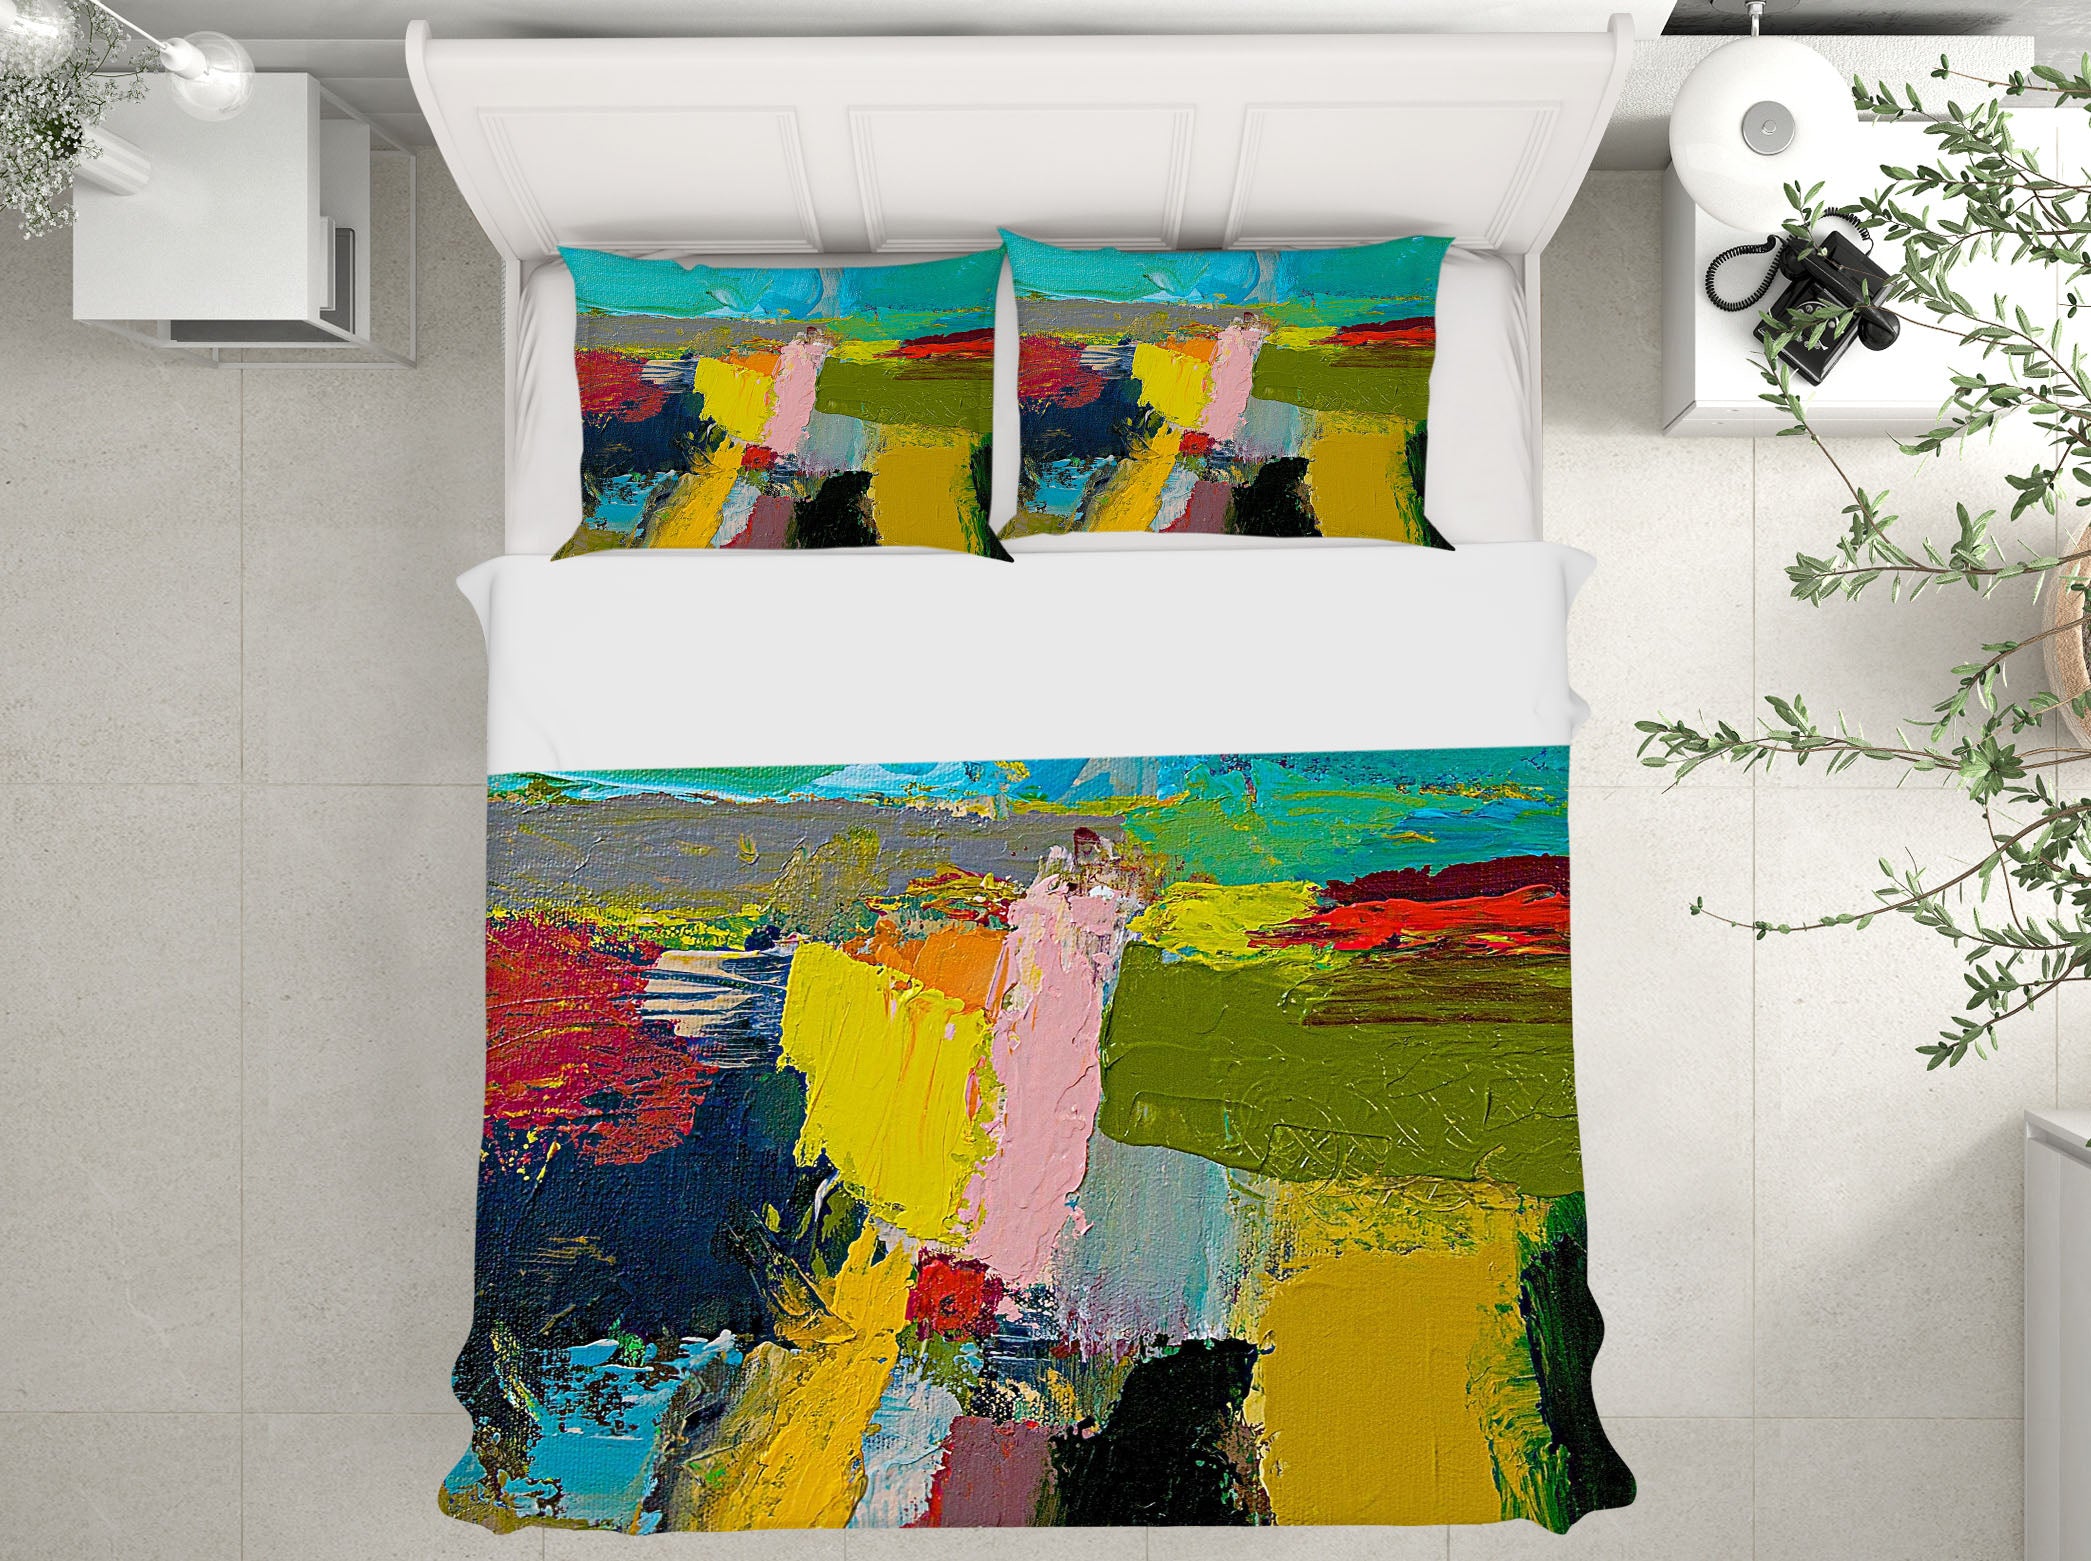 3D Pigment Art 1069 Allan P. Friedlander Bedding Bed Pillowcases Quilt